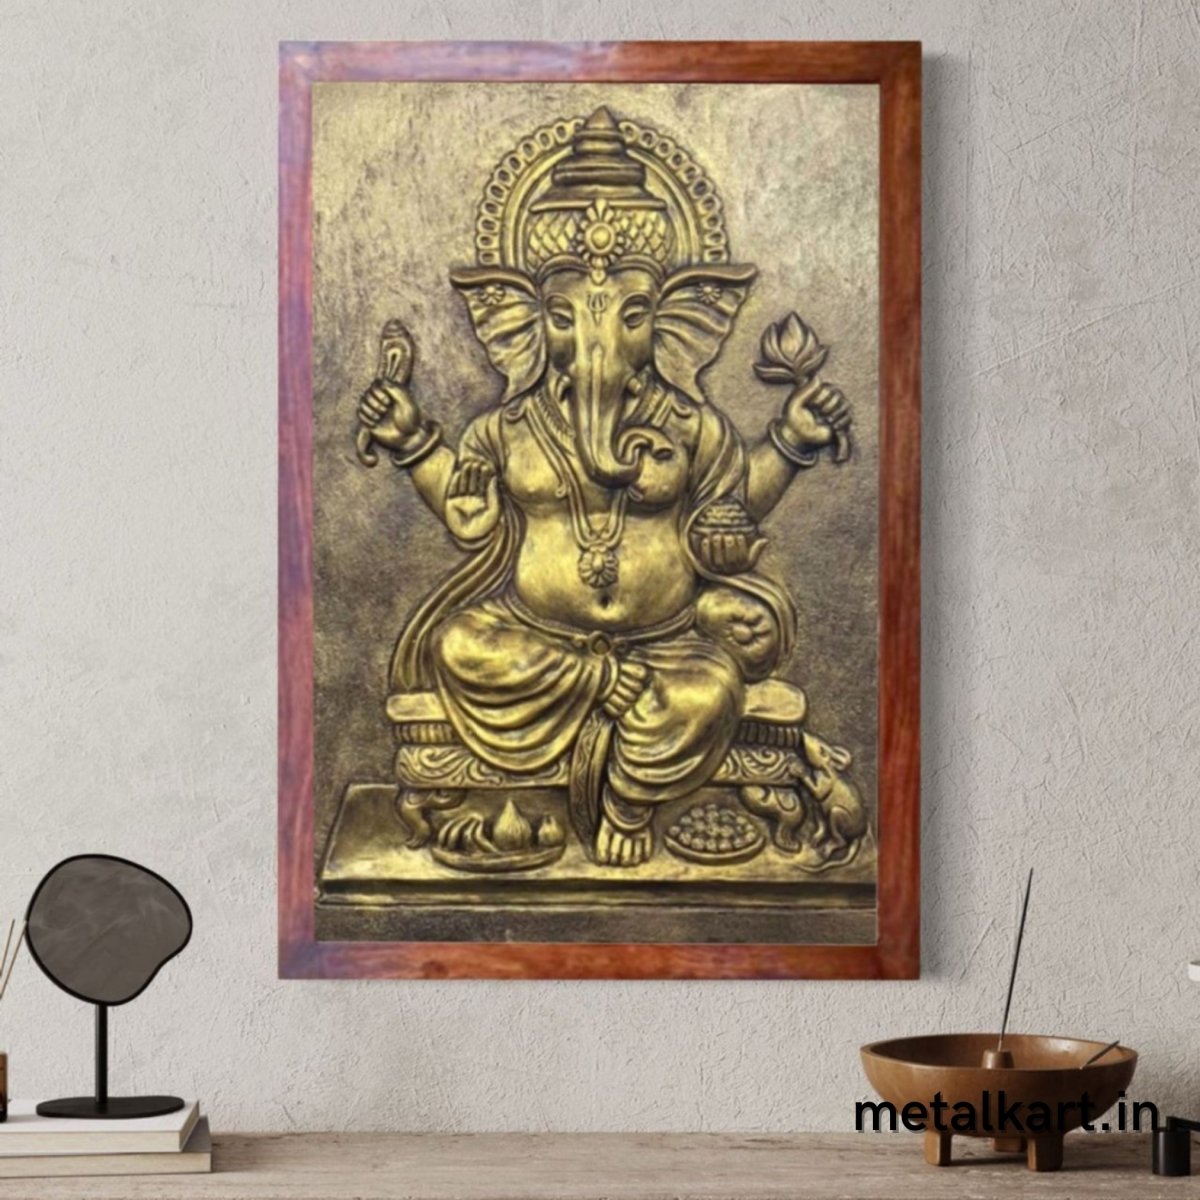 Sri Ganesh 3D Wall Sculpture (36 x 24 Inches)